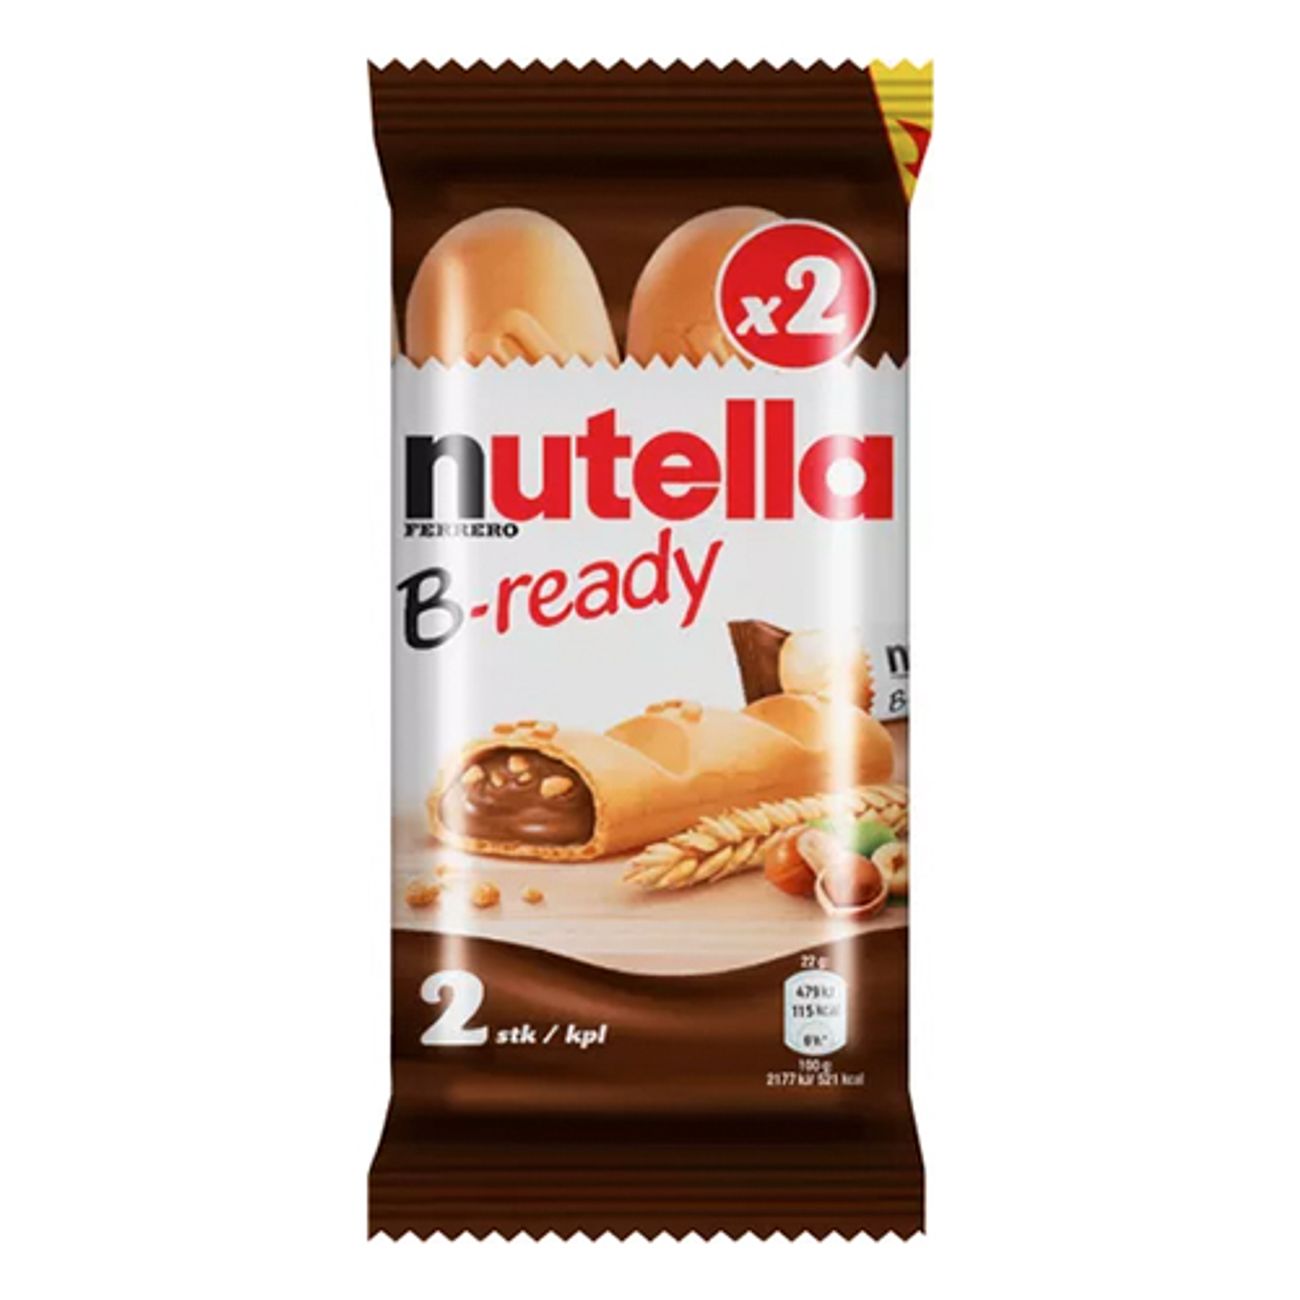 nutella-b-ready-3